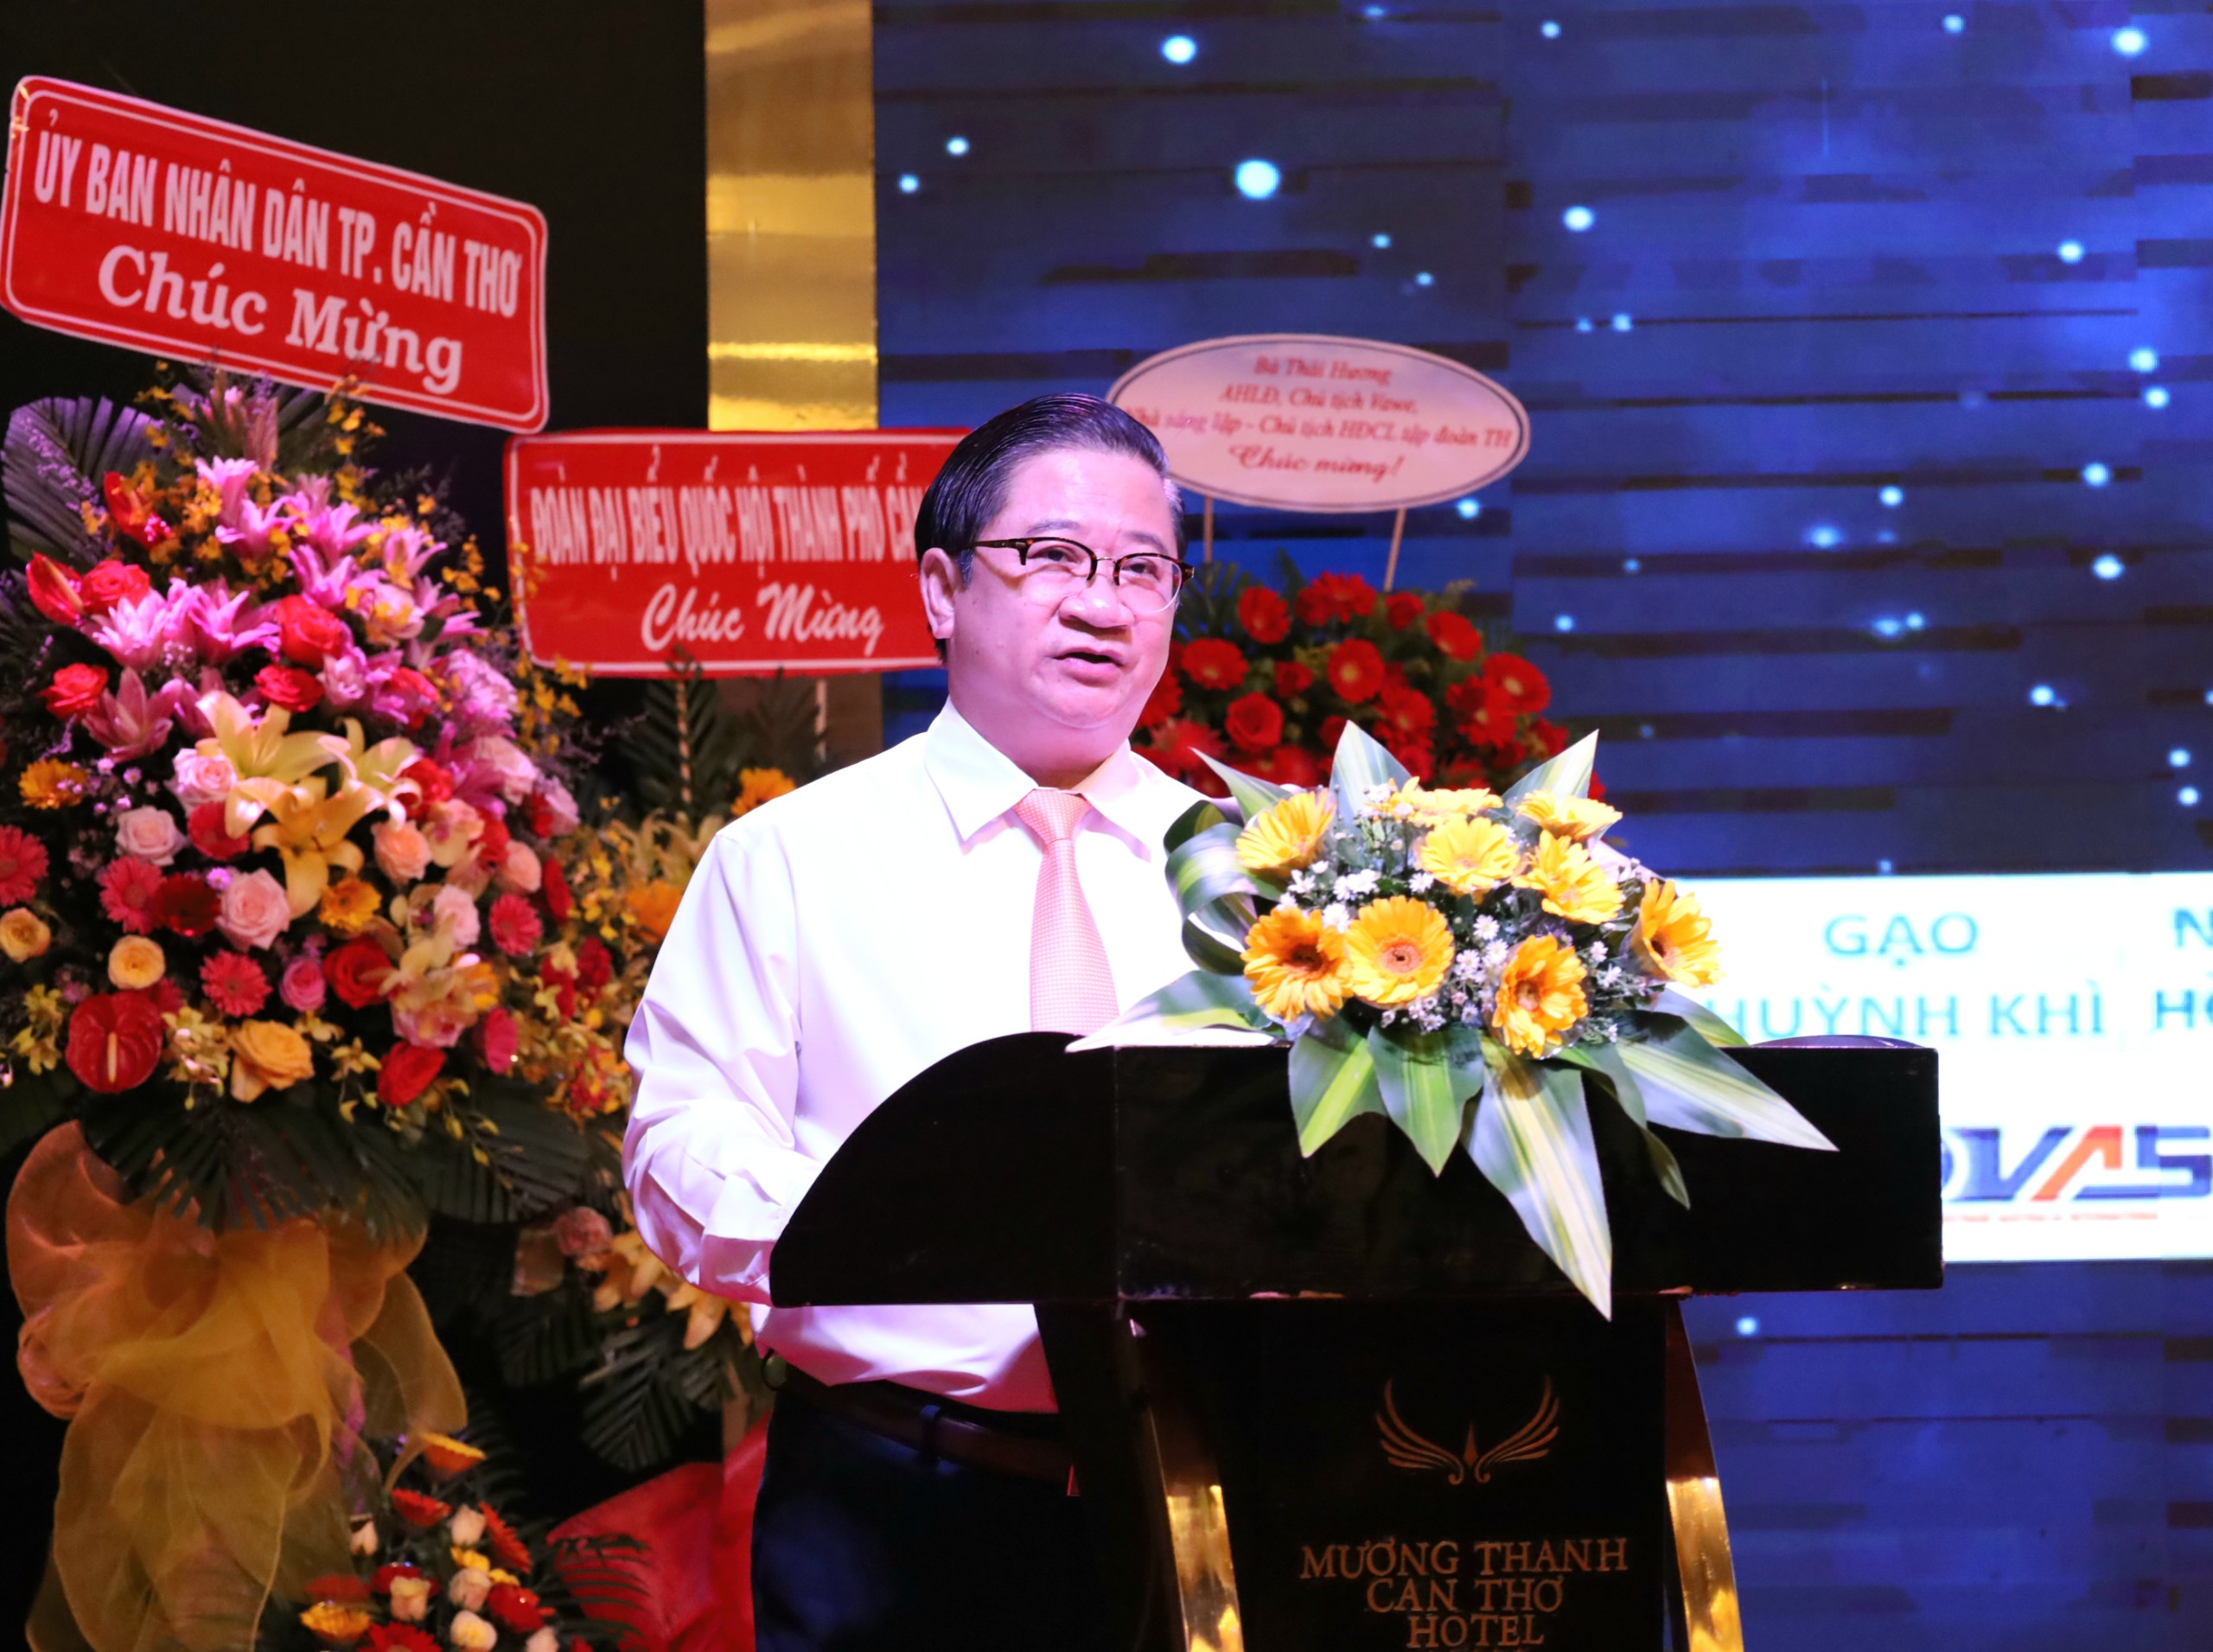 Ông Trần Việt Trường, Phó Bí thư Thành ủy, Chủ tịch UBND TP Cần Thơ phát biểu tại Đại hội.